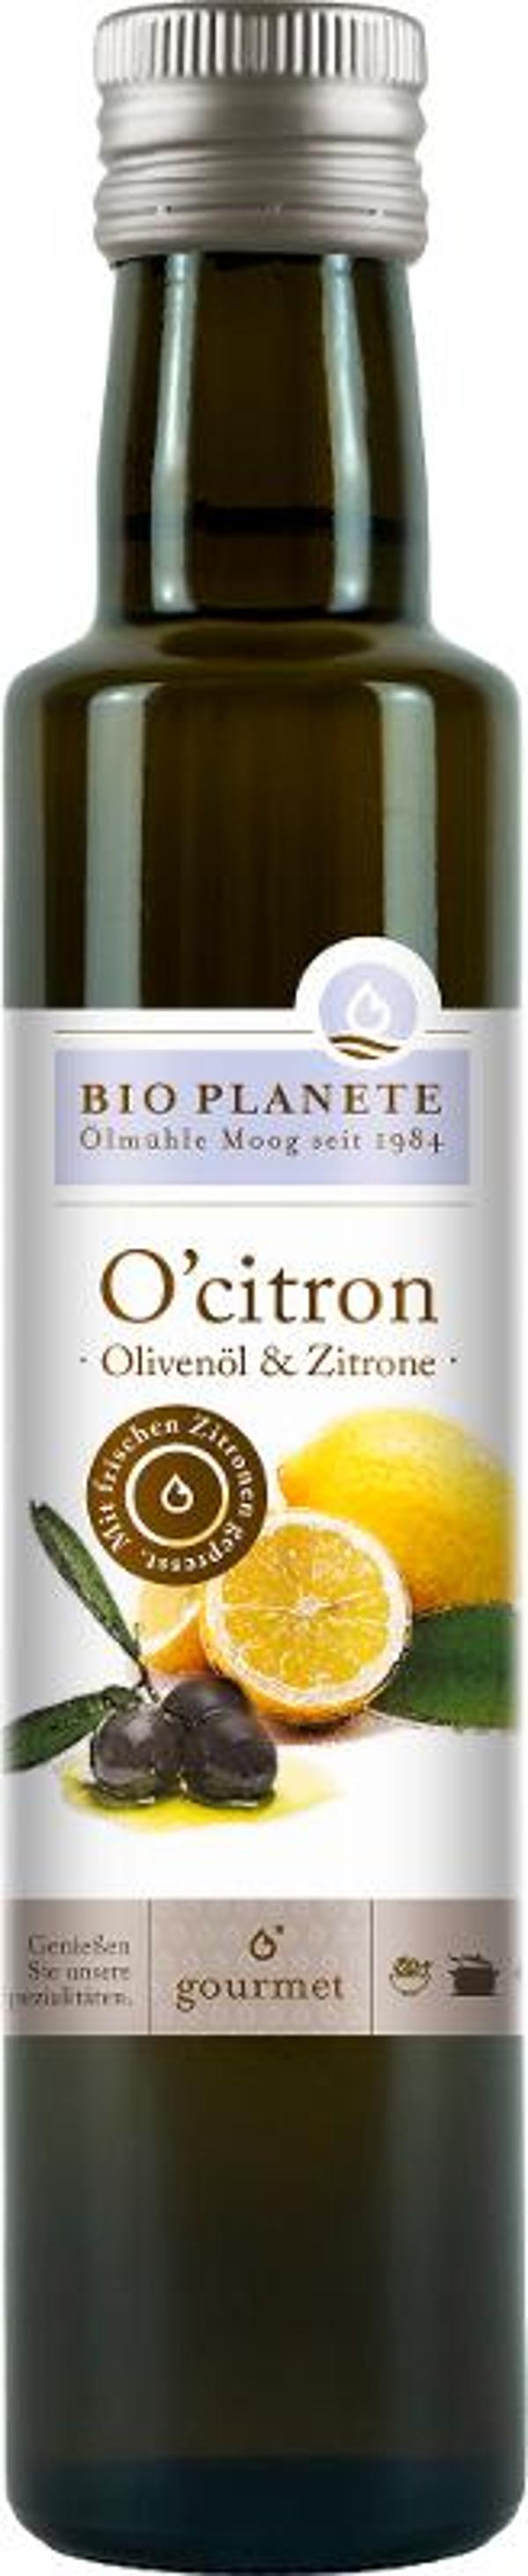 Produktfoto zu O'Citron Olivenöl mit Zitrone